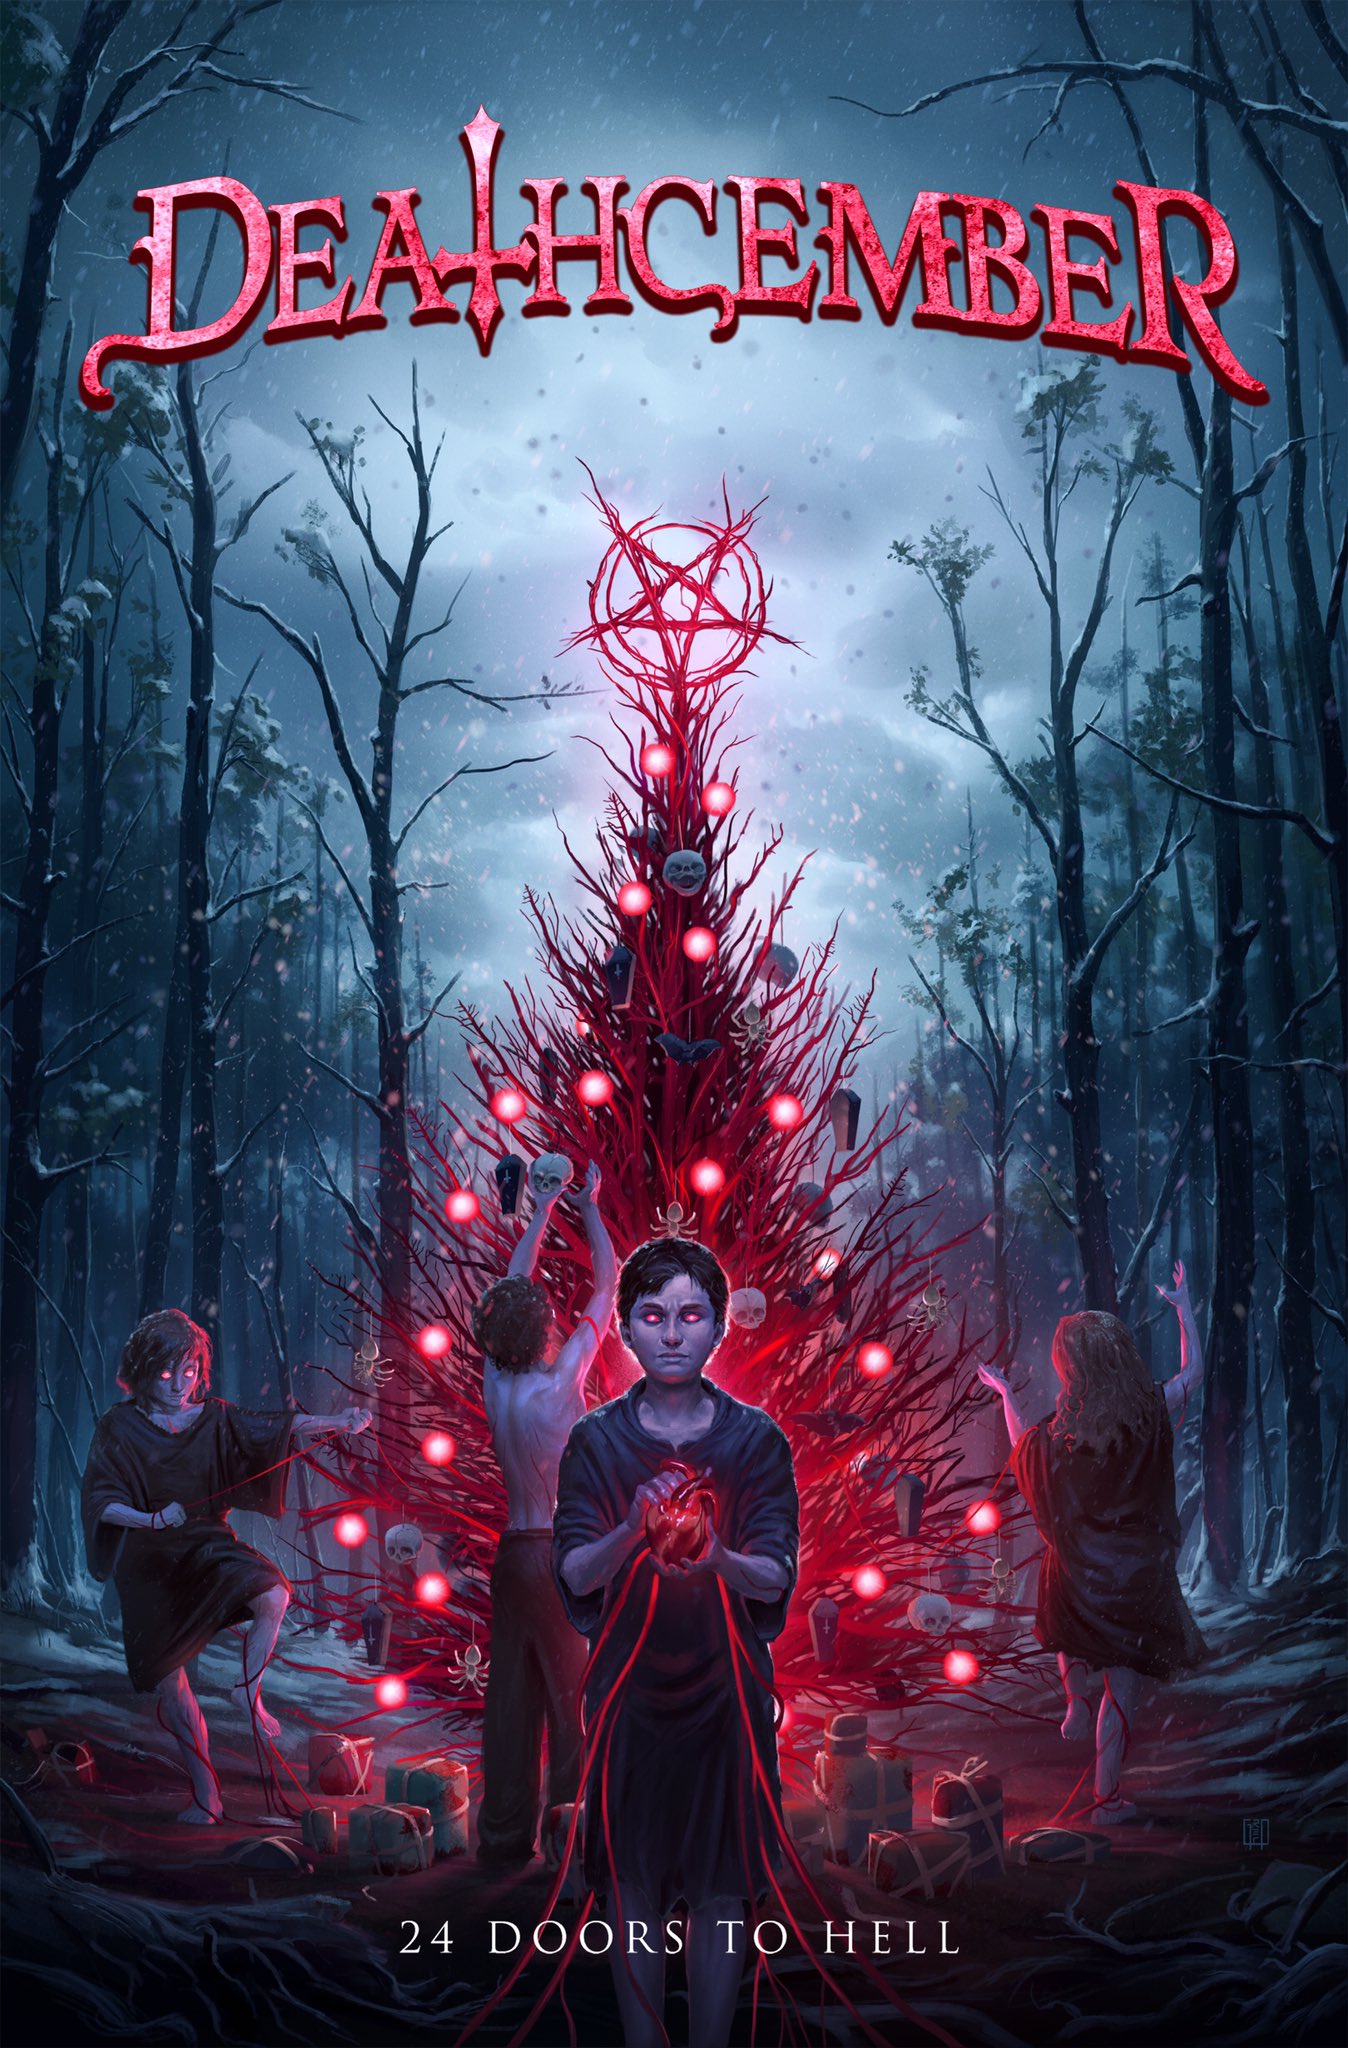 Antologia de terror natalino vai acabar com a magia do seu Natal  “Deathcember” | Trilha Do Medo